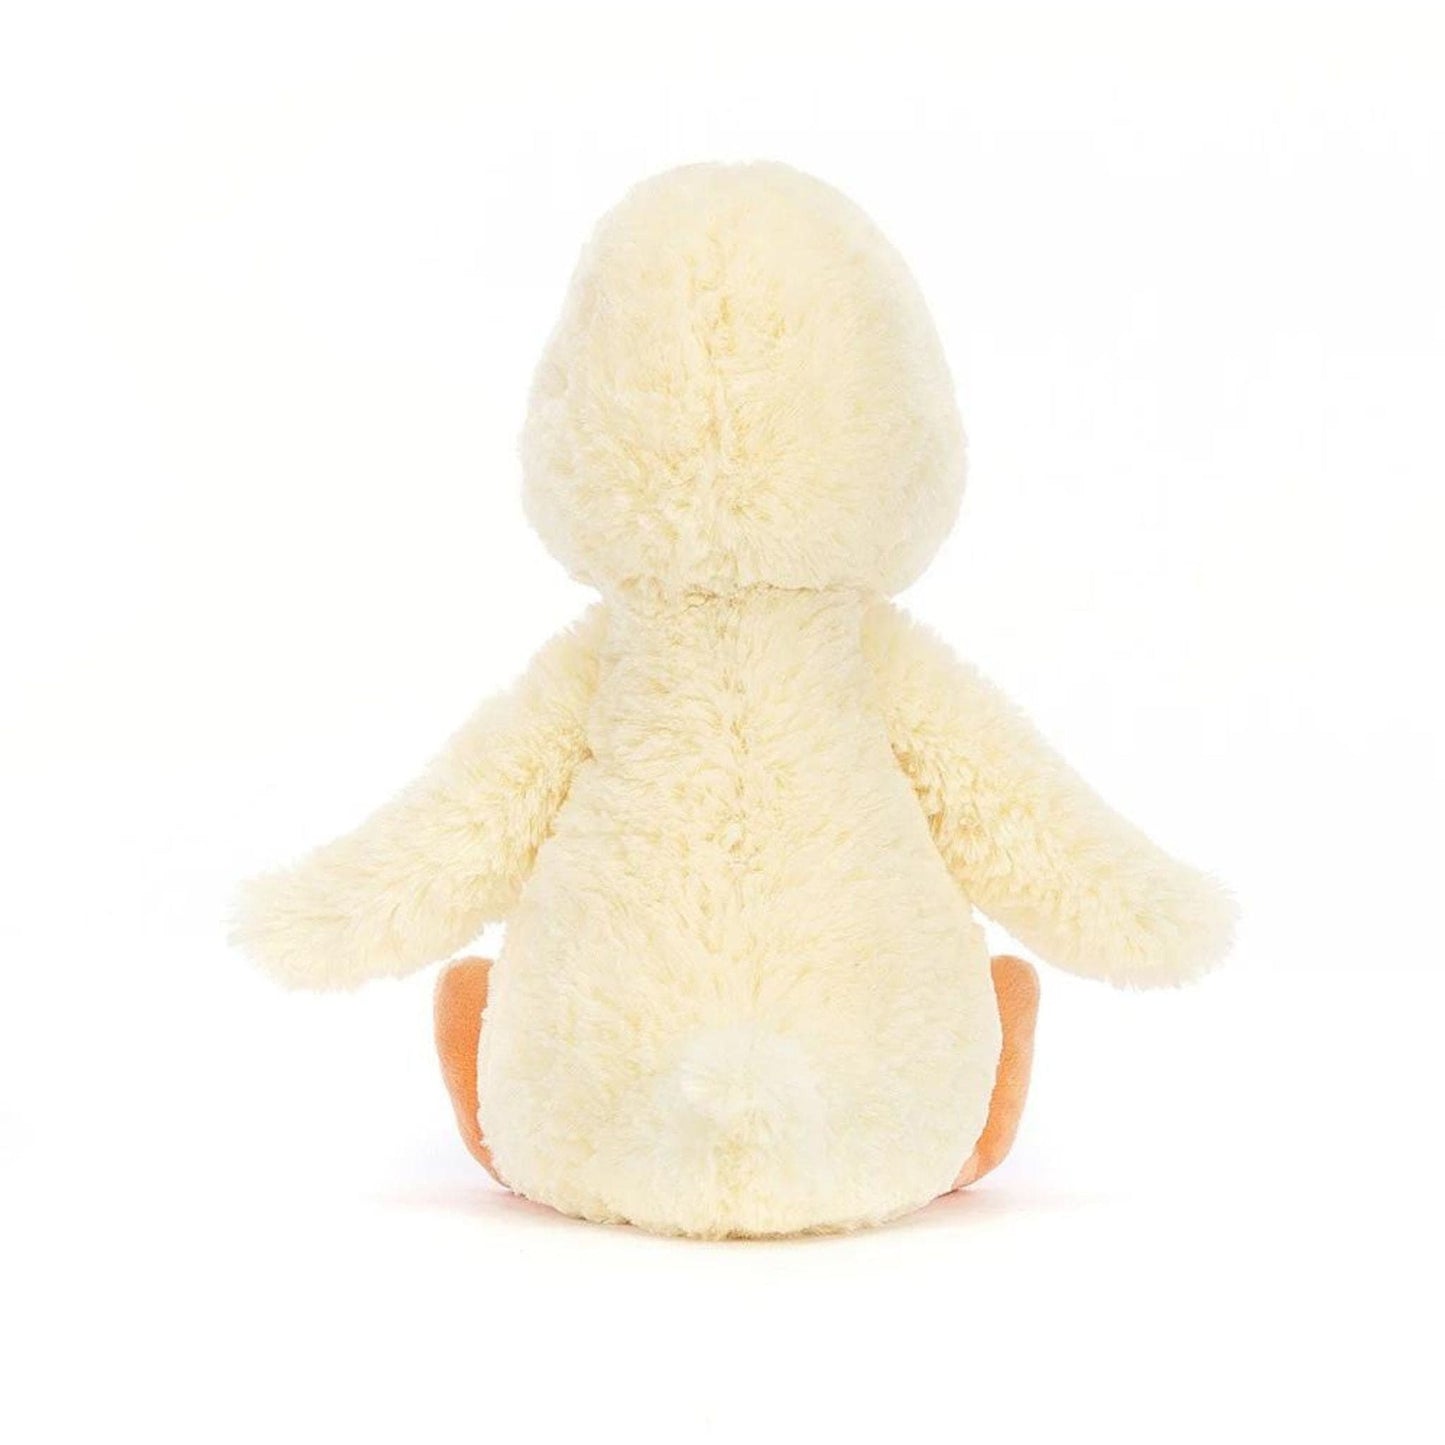 Jellycat Bashful Duckling soft toy 31cm